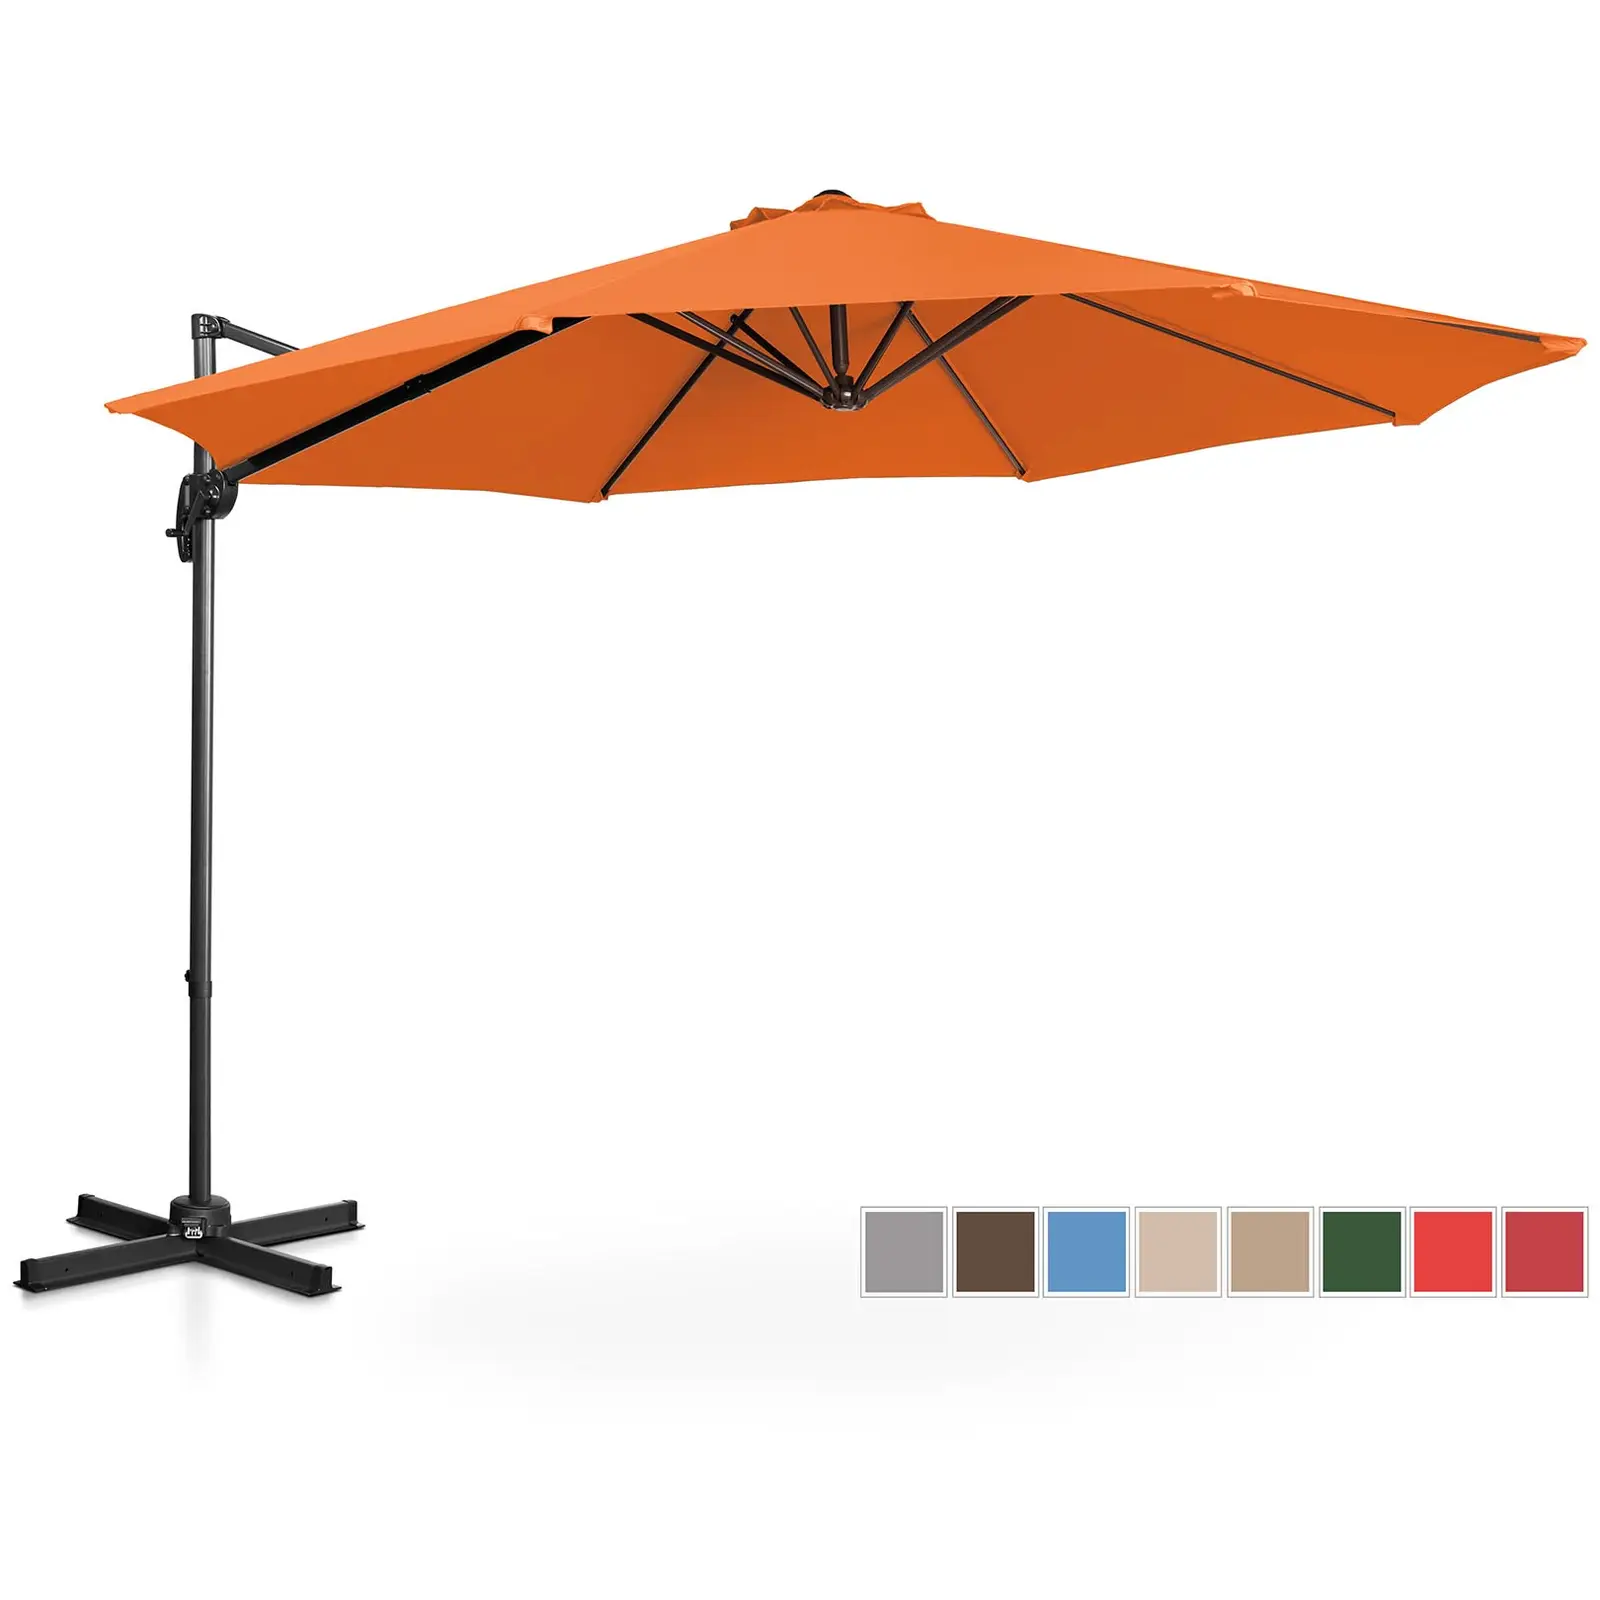 Umbrelă de grădină - portocalie - rotundă - Ø 300 cm - înclinabilă și rotativă